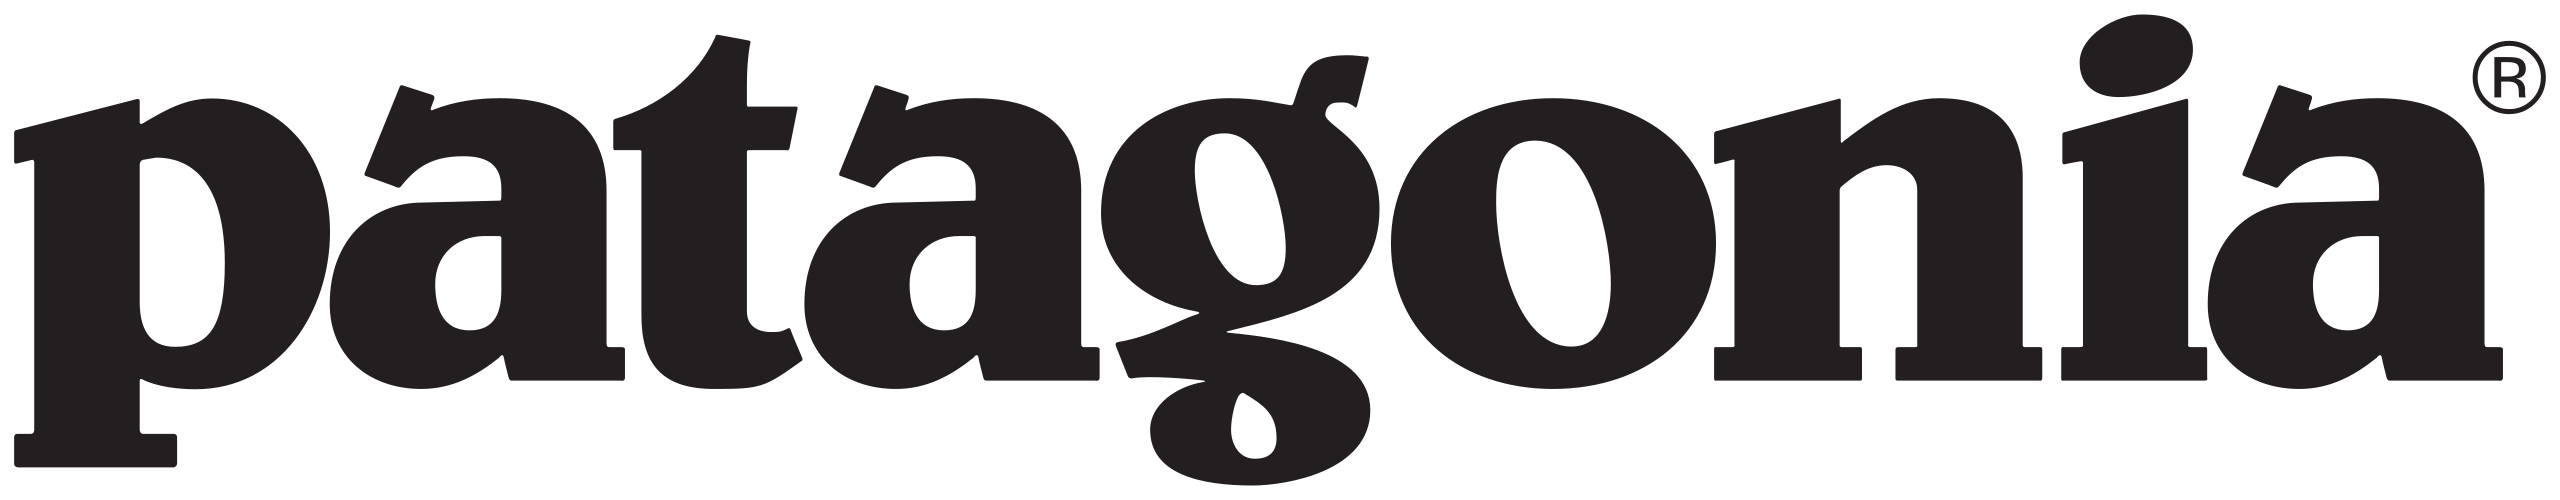 Patagonia Unternehmen logo.svg 1